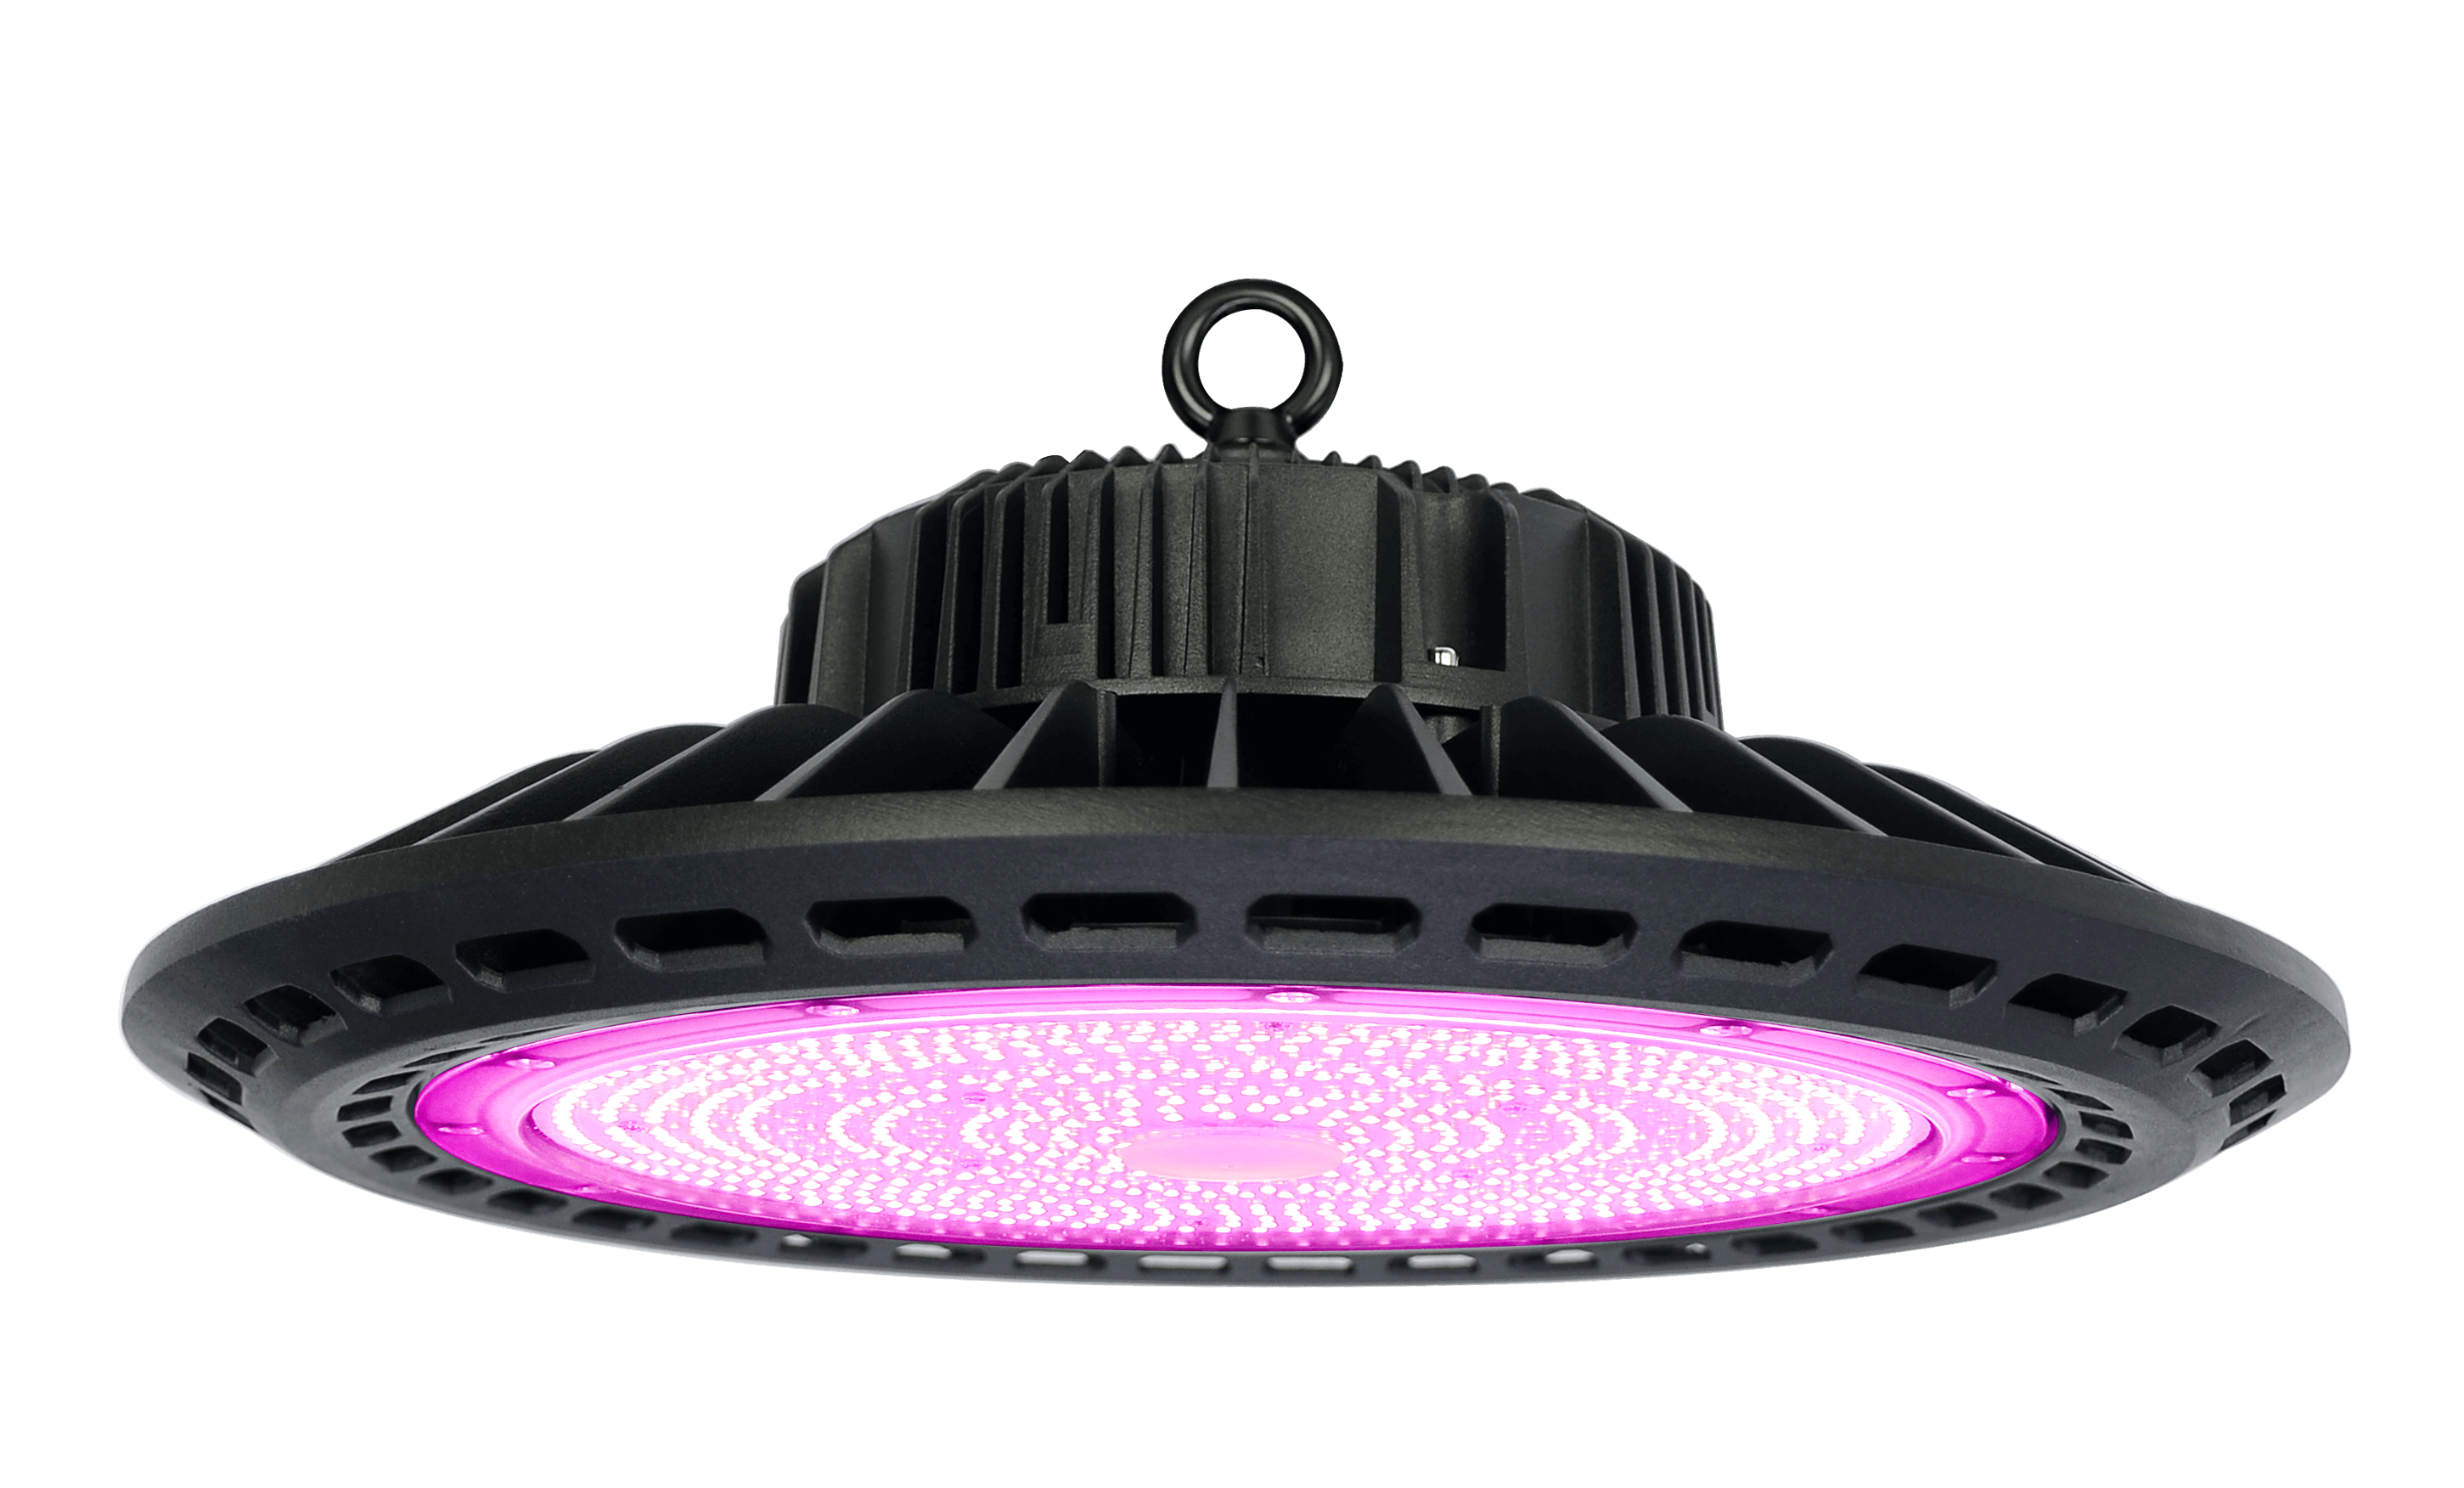 Cultiuana UFO Full Spectrum LED Grow Light - 100w-500w, AC100-277V, IR Diodes, Lazy Grow